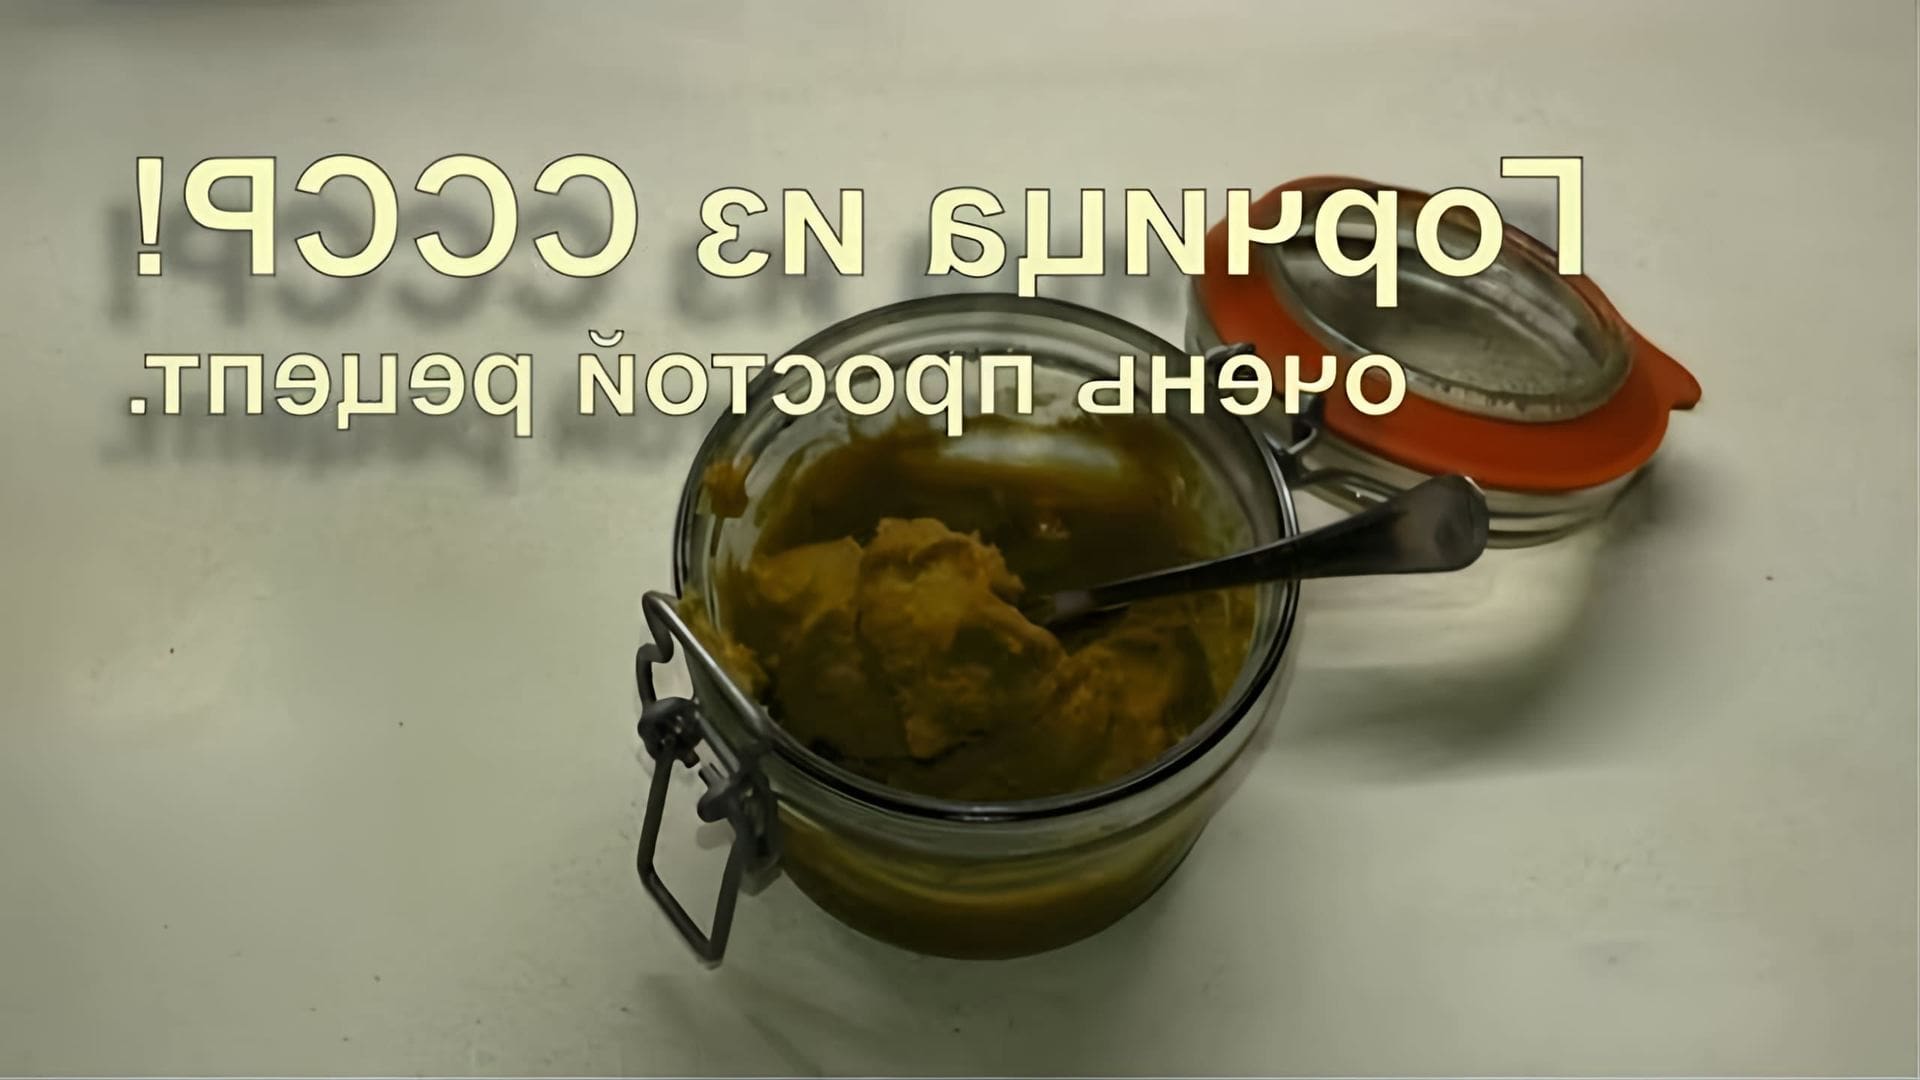 В этом видео демонстрируется процесс приготовления горчицы по старому рецепту, который использовался в СССР